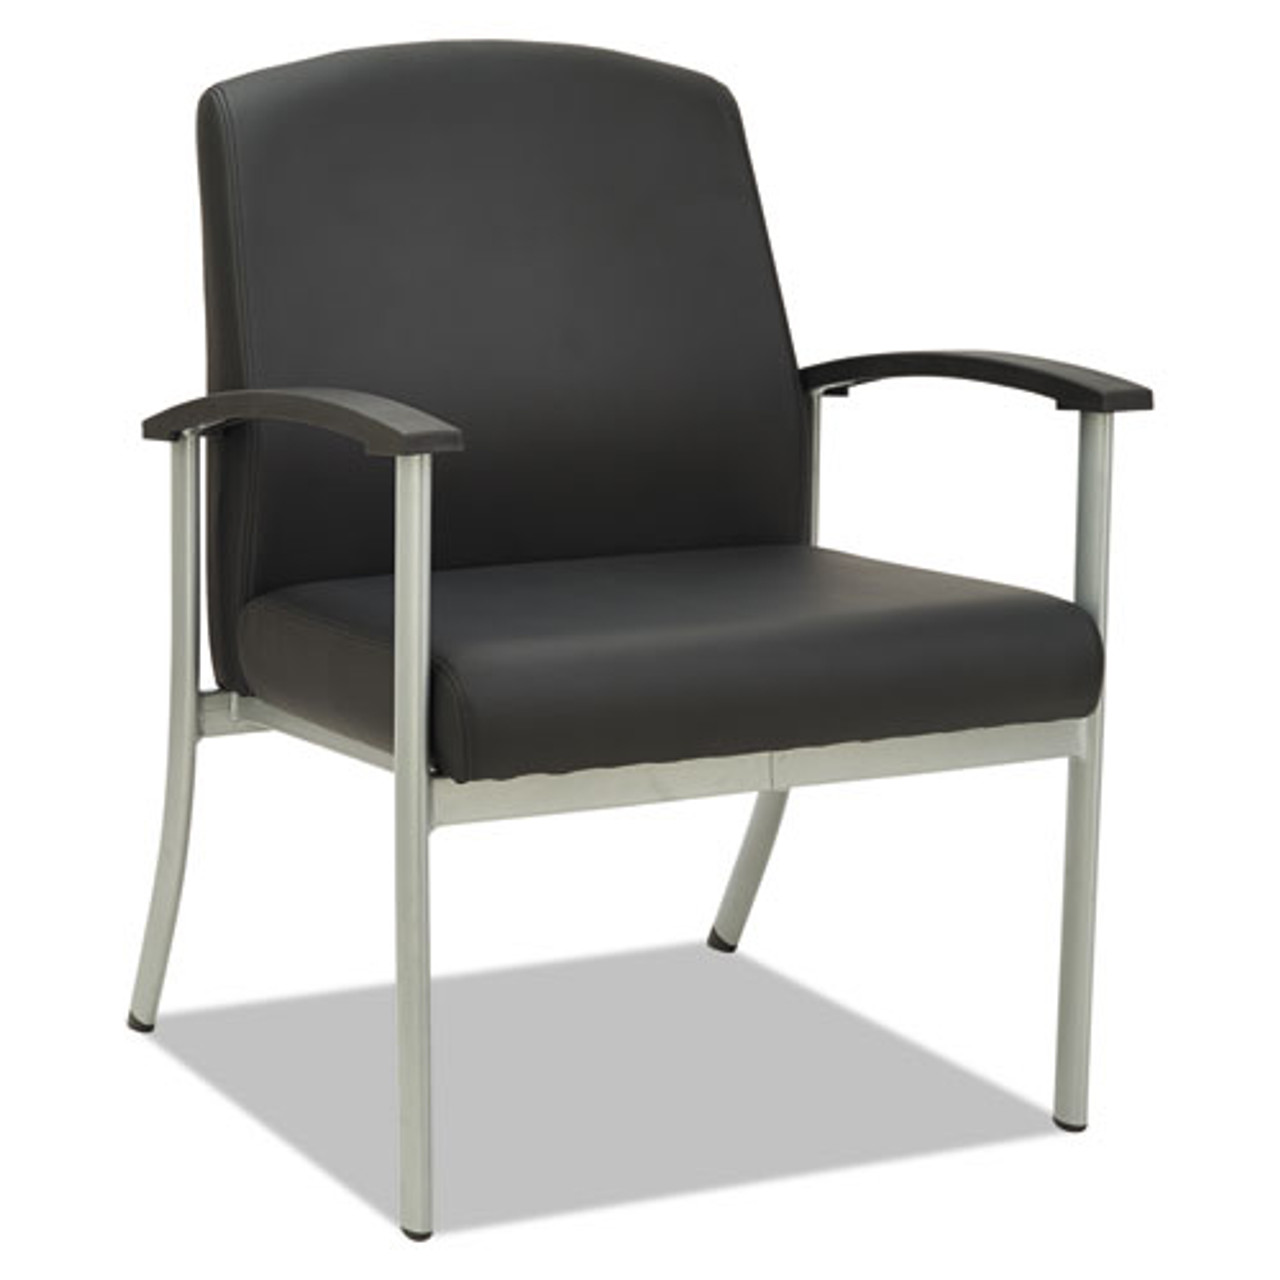 Alera Metalounge Series Guest Chair, 25 5/8 X 26 3/8 X 34 5/8, Black, #AL-1445